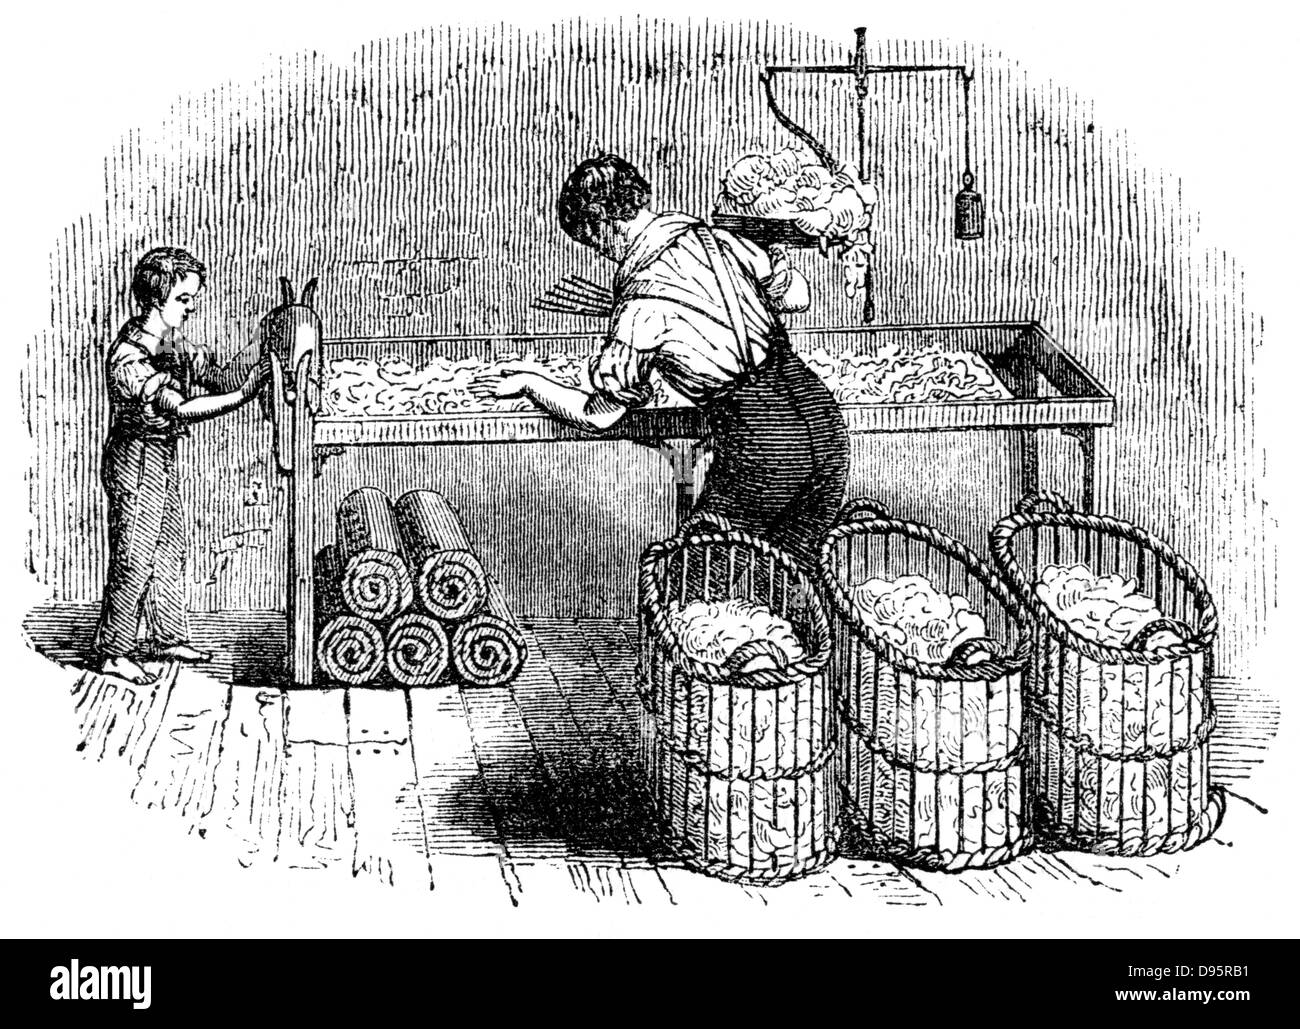 Die Baumwolle in 'runden', so dass er in die Karde in einem einheitlichen Beträge in die Tat umgesetzt werden könnten. Im Vordergrund Körbe aus Baumwolle, die durch den Gin wurden Samen und separate Fasern zu entfernen. Auf der rechten Seite an der Rückseite der Rücksitzbank, Balance für das Wiegen von Baumwolle. Unter der Sitzbank sind 'runden' bereit für Krempel. Nach 'Hand' mit junge Assistentin. Von Charles Tomlinson' der nützlichen Künste und produziert von Großbritannien "London c 1845. Stockfoto